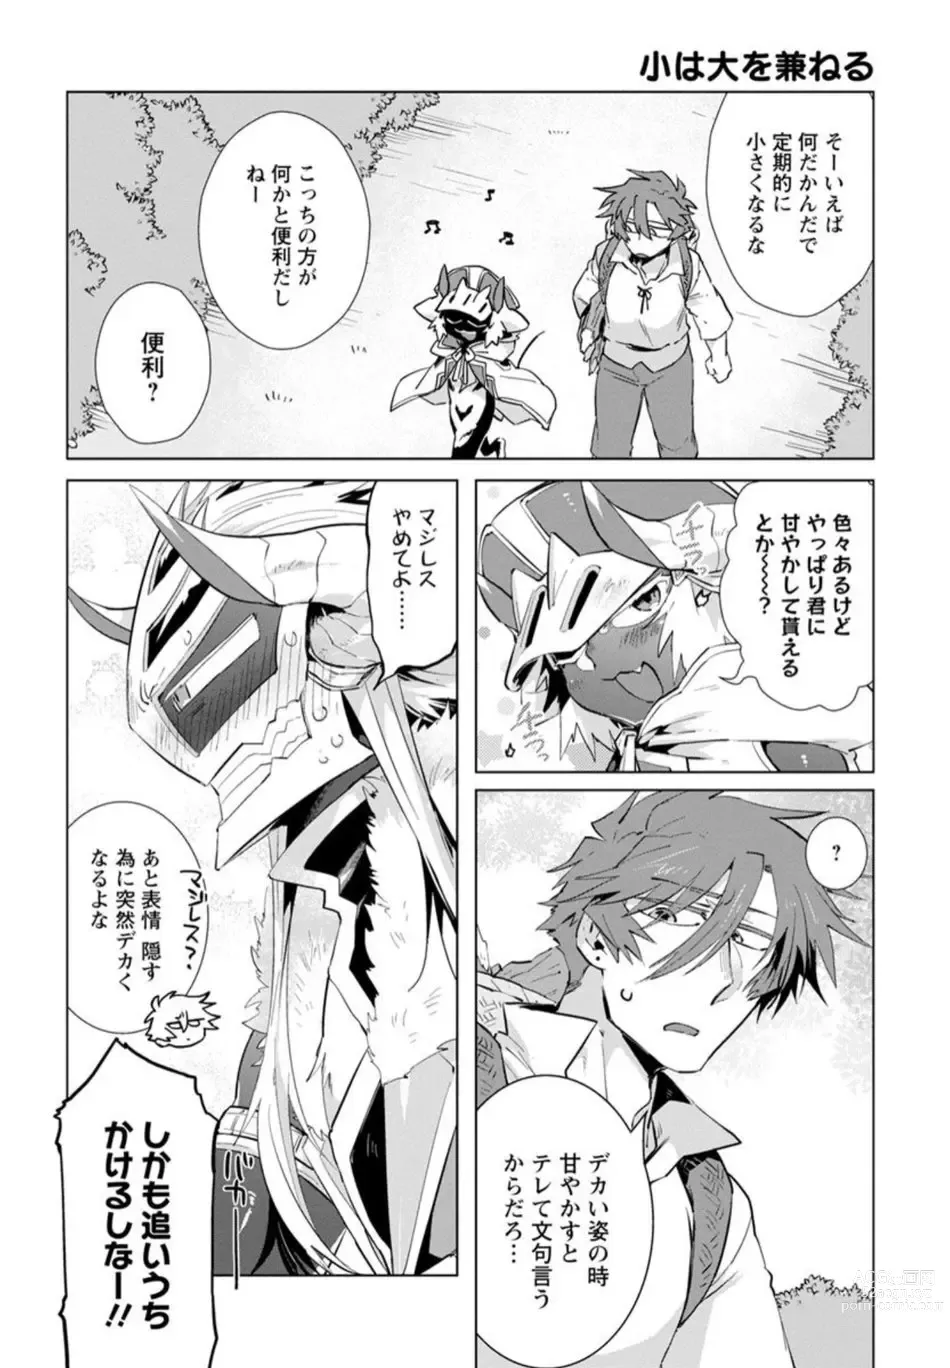 Page 199 of manga Maou-sama wa Yuusha no Ken de Midaretai